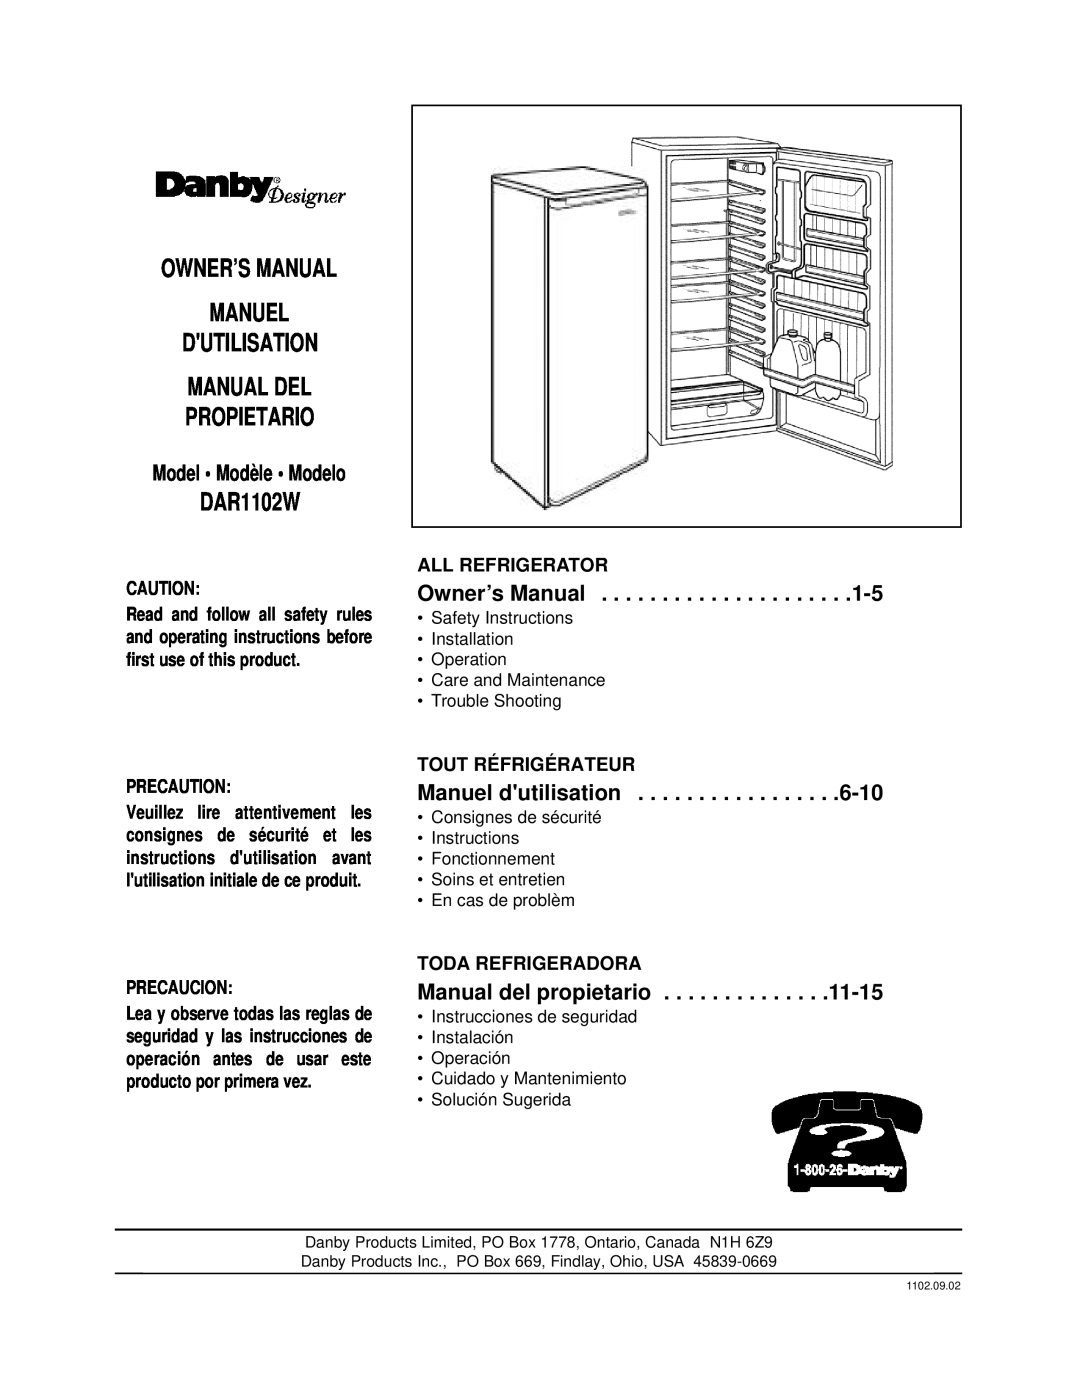 Danby DAR1102W manual Propietario, Manual del propietario, Precaution, Precaucion, Model Modèle Modelo, All Refrigerator 